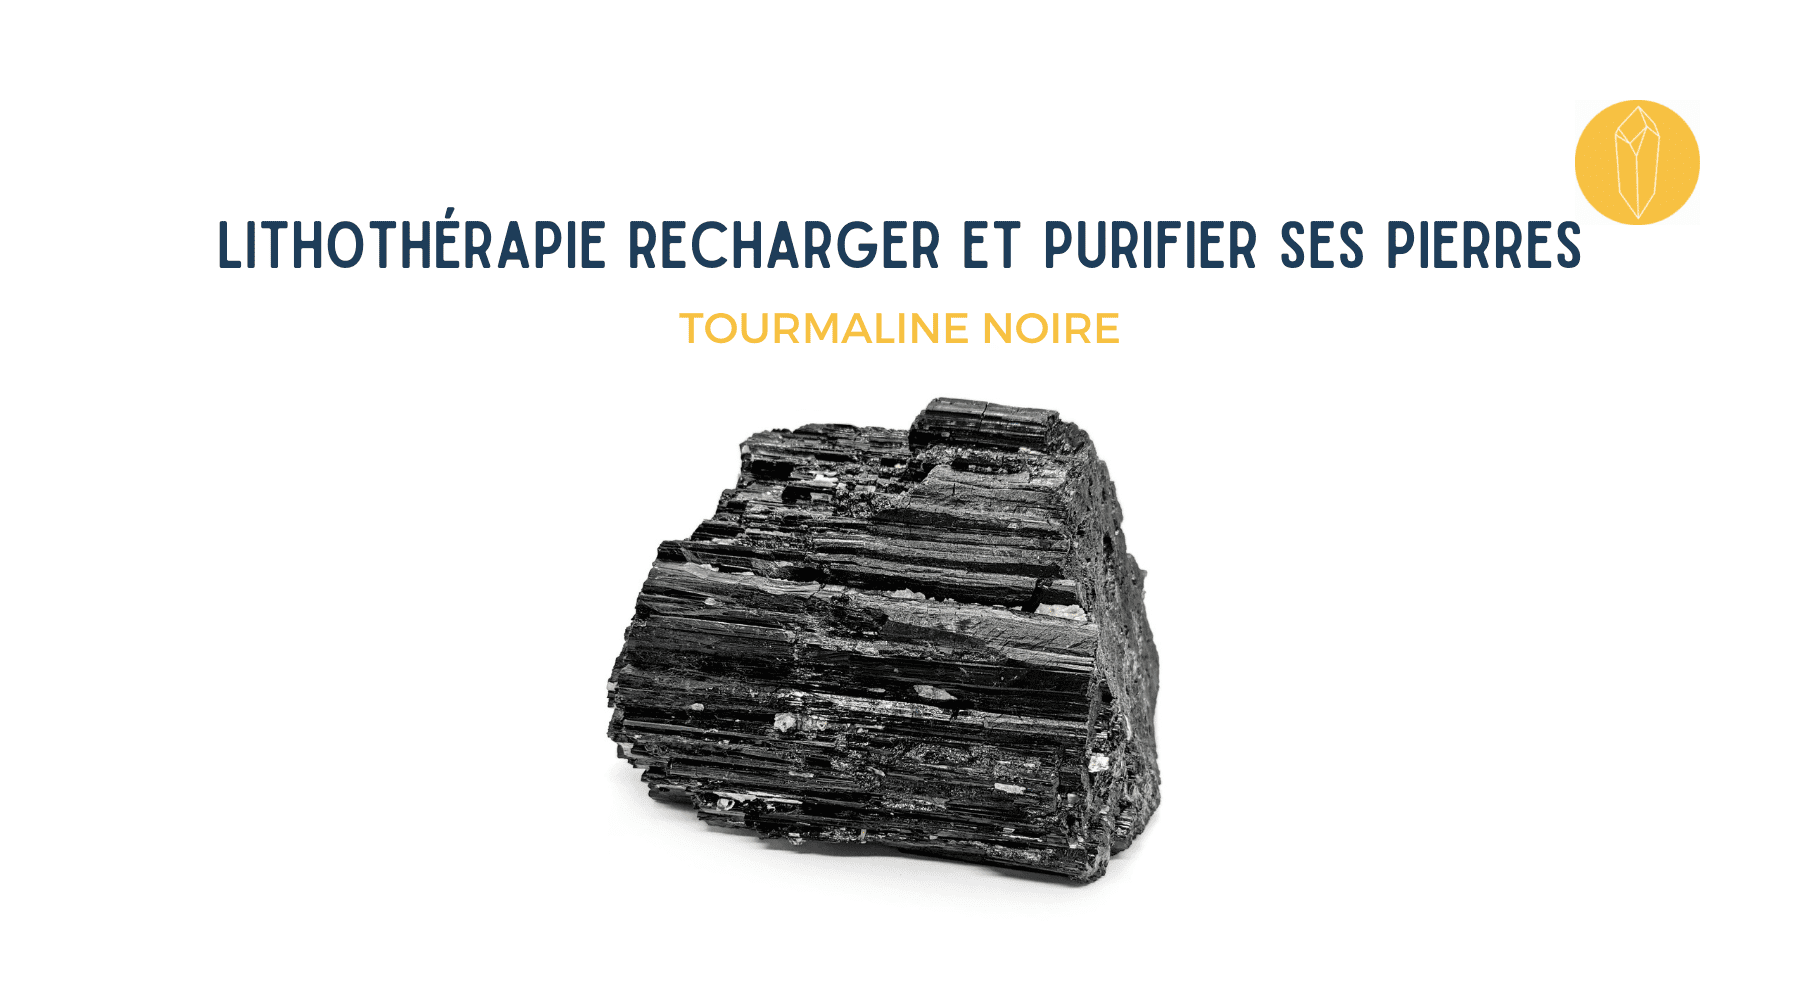 Tourmaline Noire  rechargement et purification